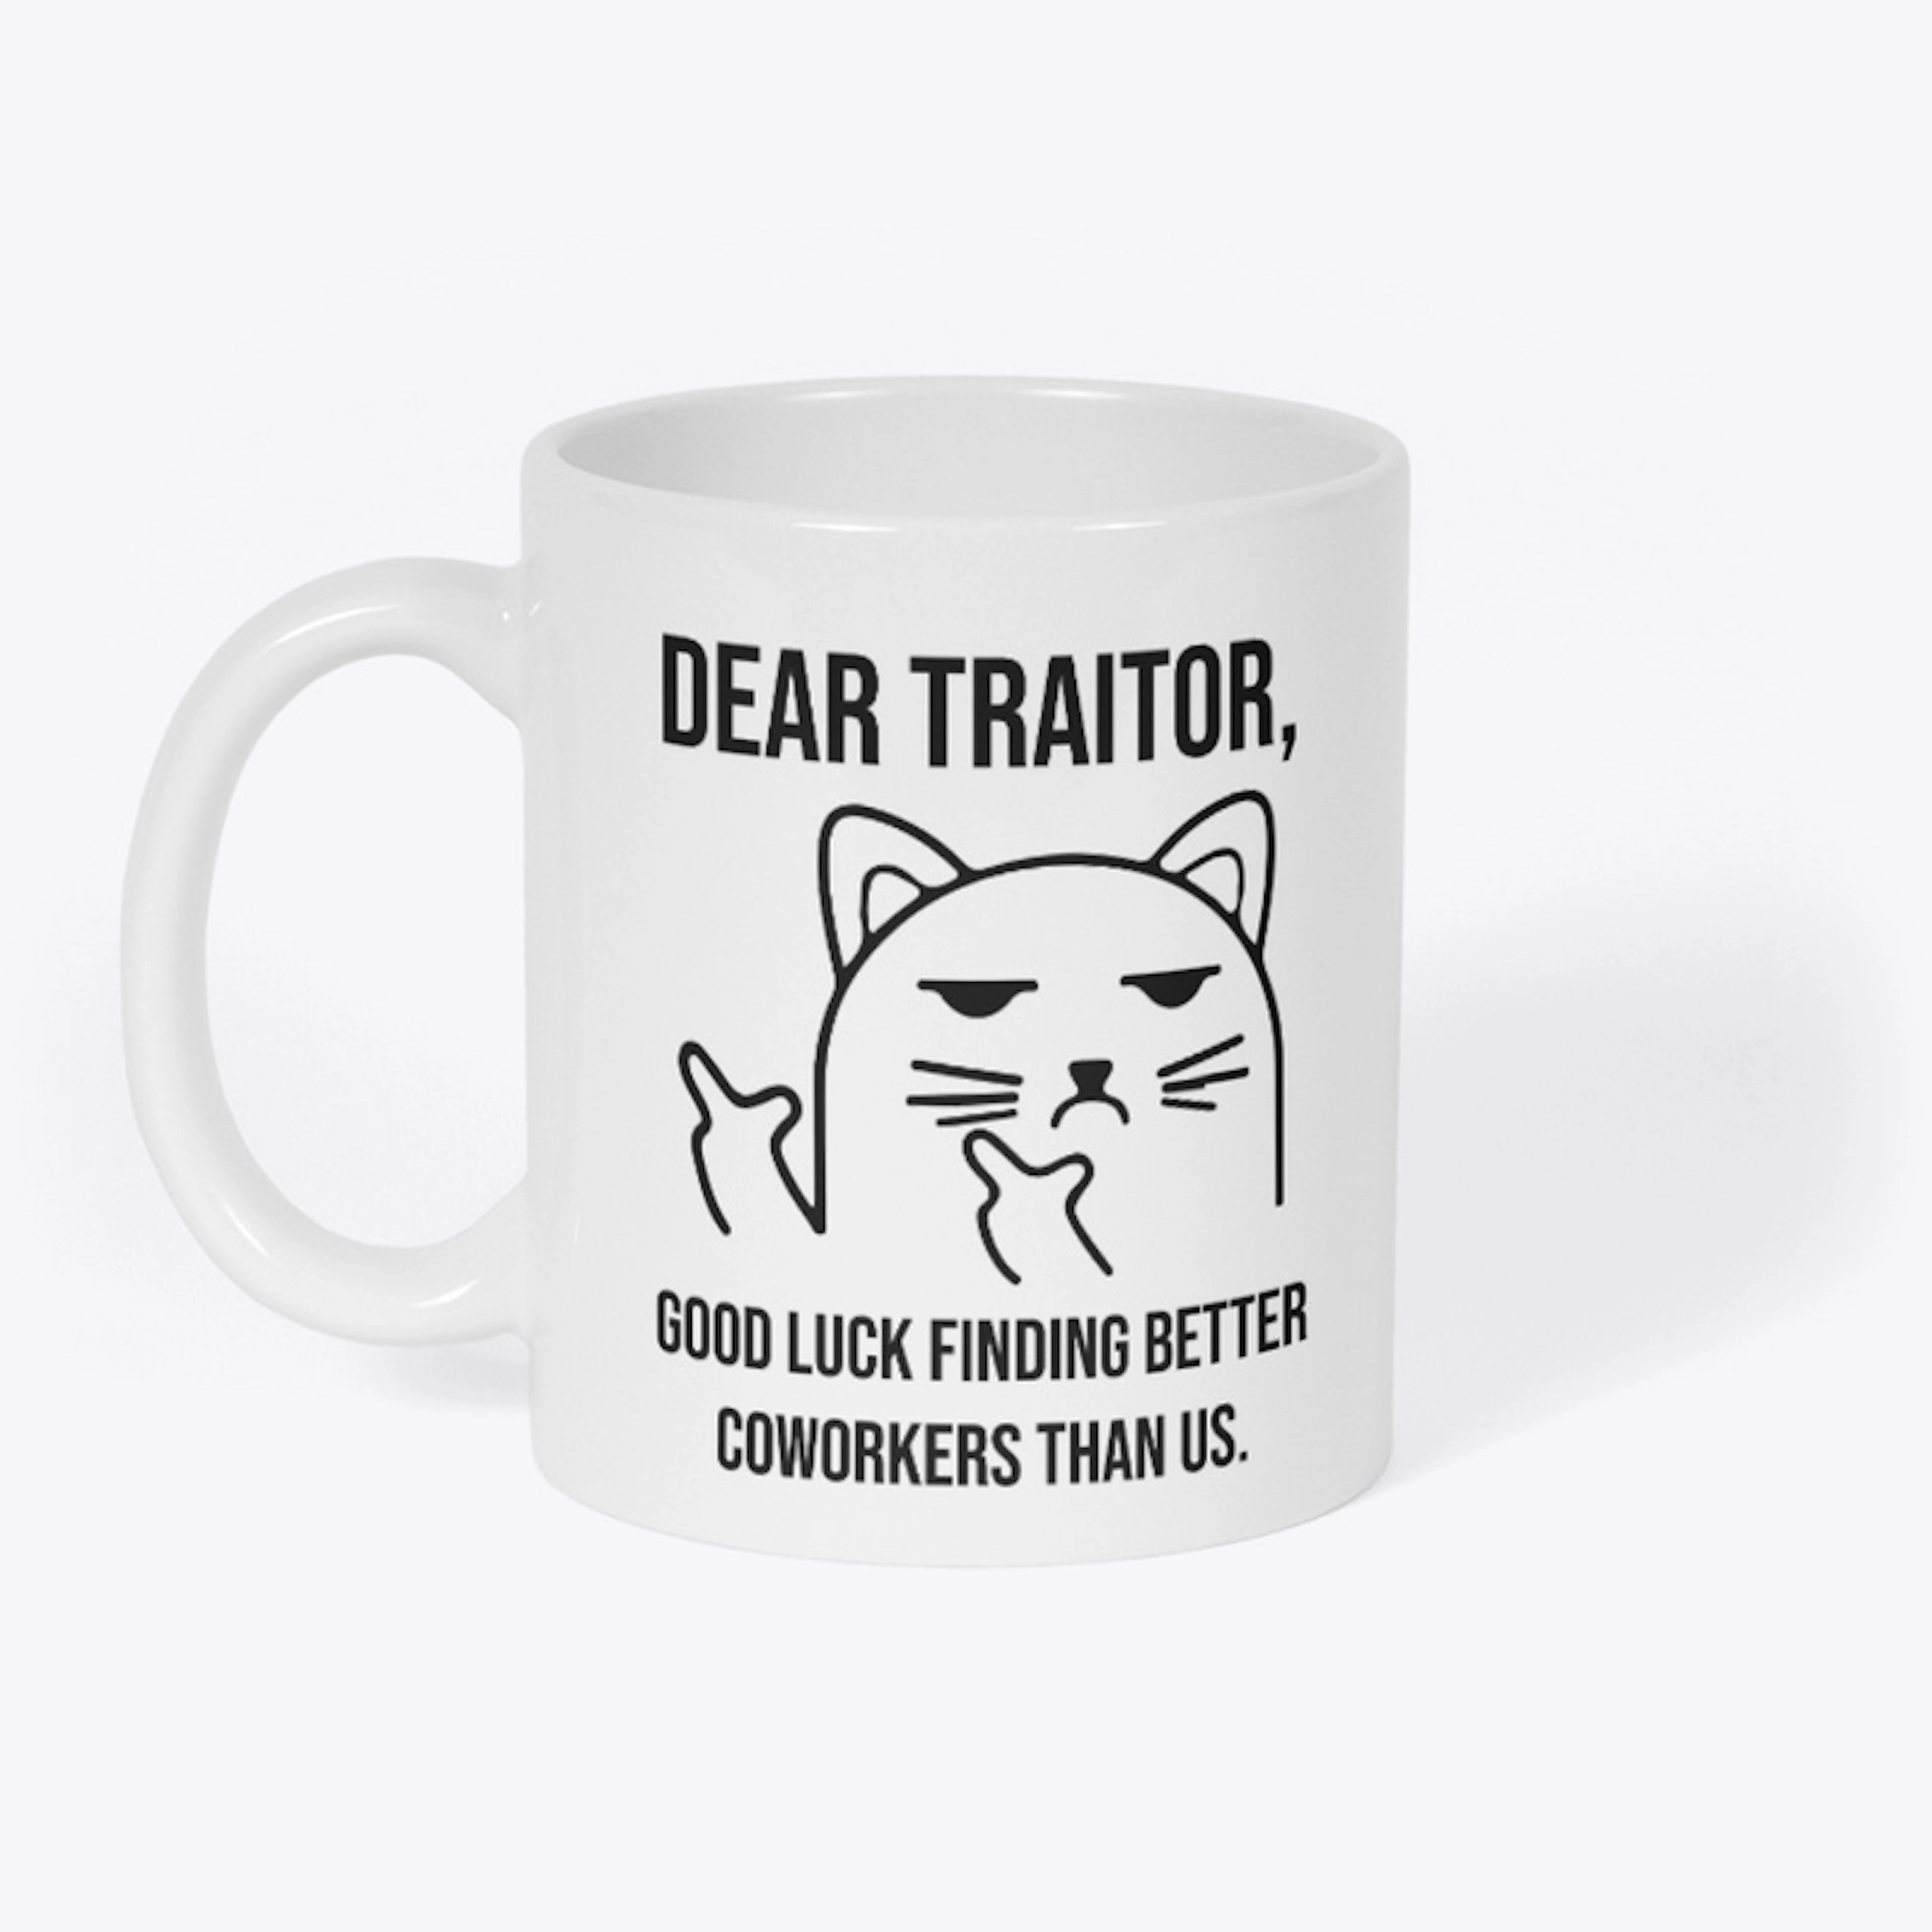 Dear Traitor